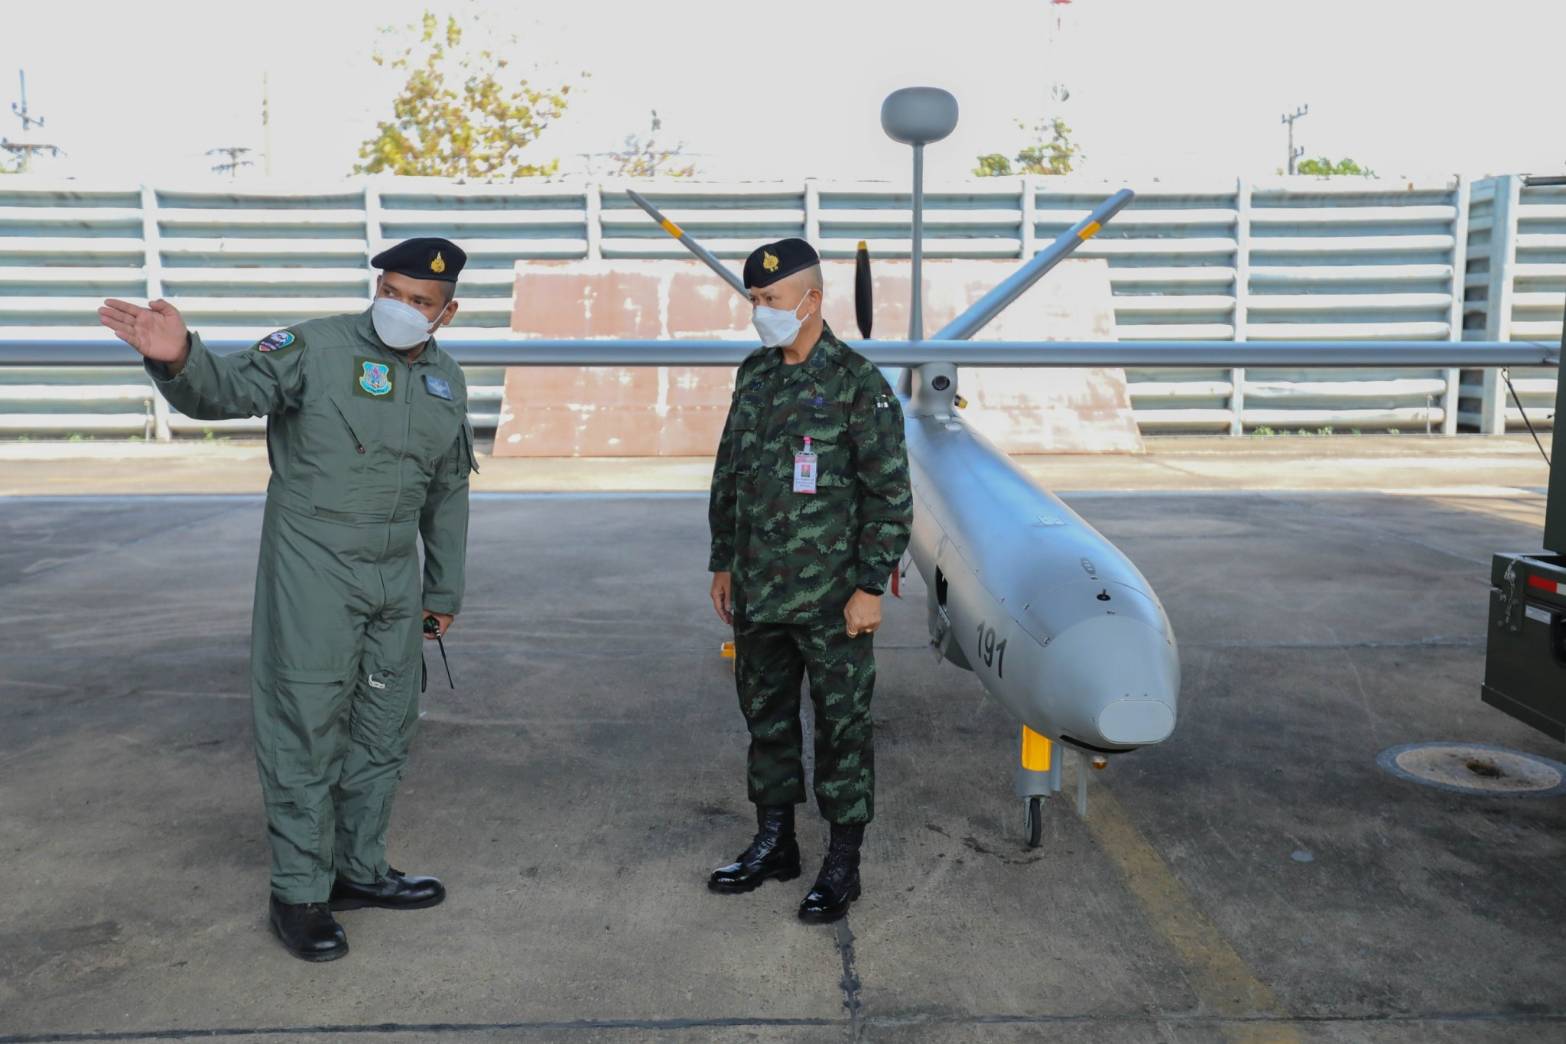 บก.คฟป.ทภ.3 สน.เตรียมความพร้อมอากาศยานไร้คนขับ UAV รุ่น Hermes 450 (เฮอร์เมส)เพื่อใช้ในการบินลาดตะเวนตรวจจุดความร้อน ก่อนนำกำลังภาคพื้นเข้าดับไฟ